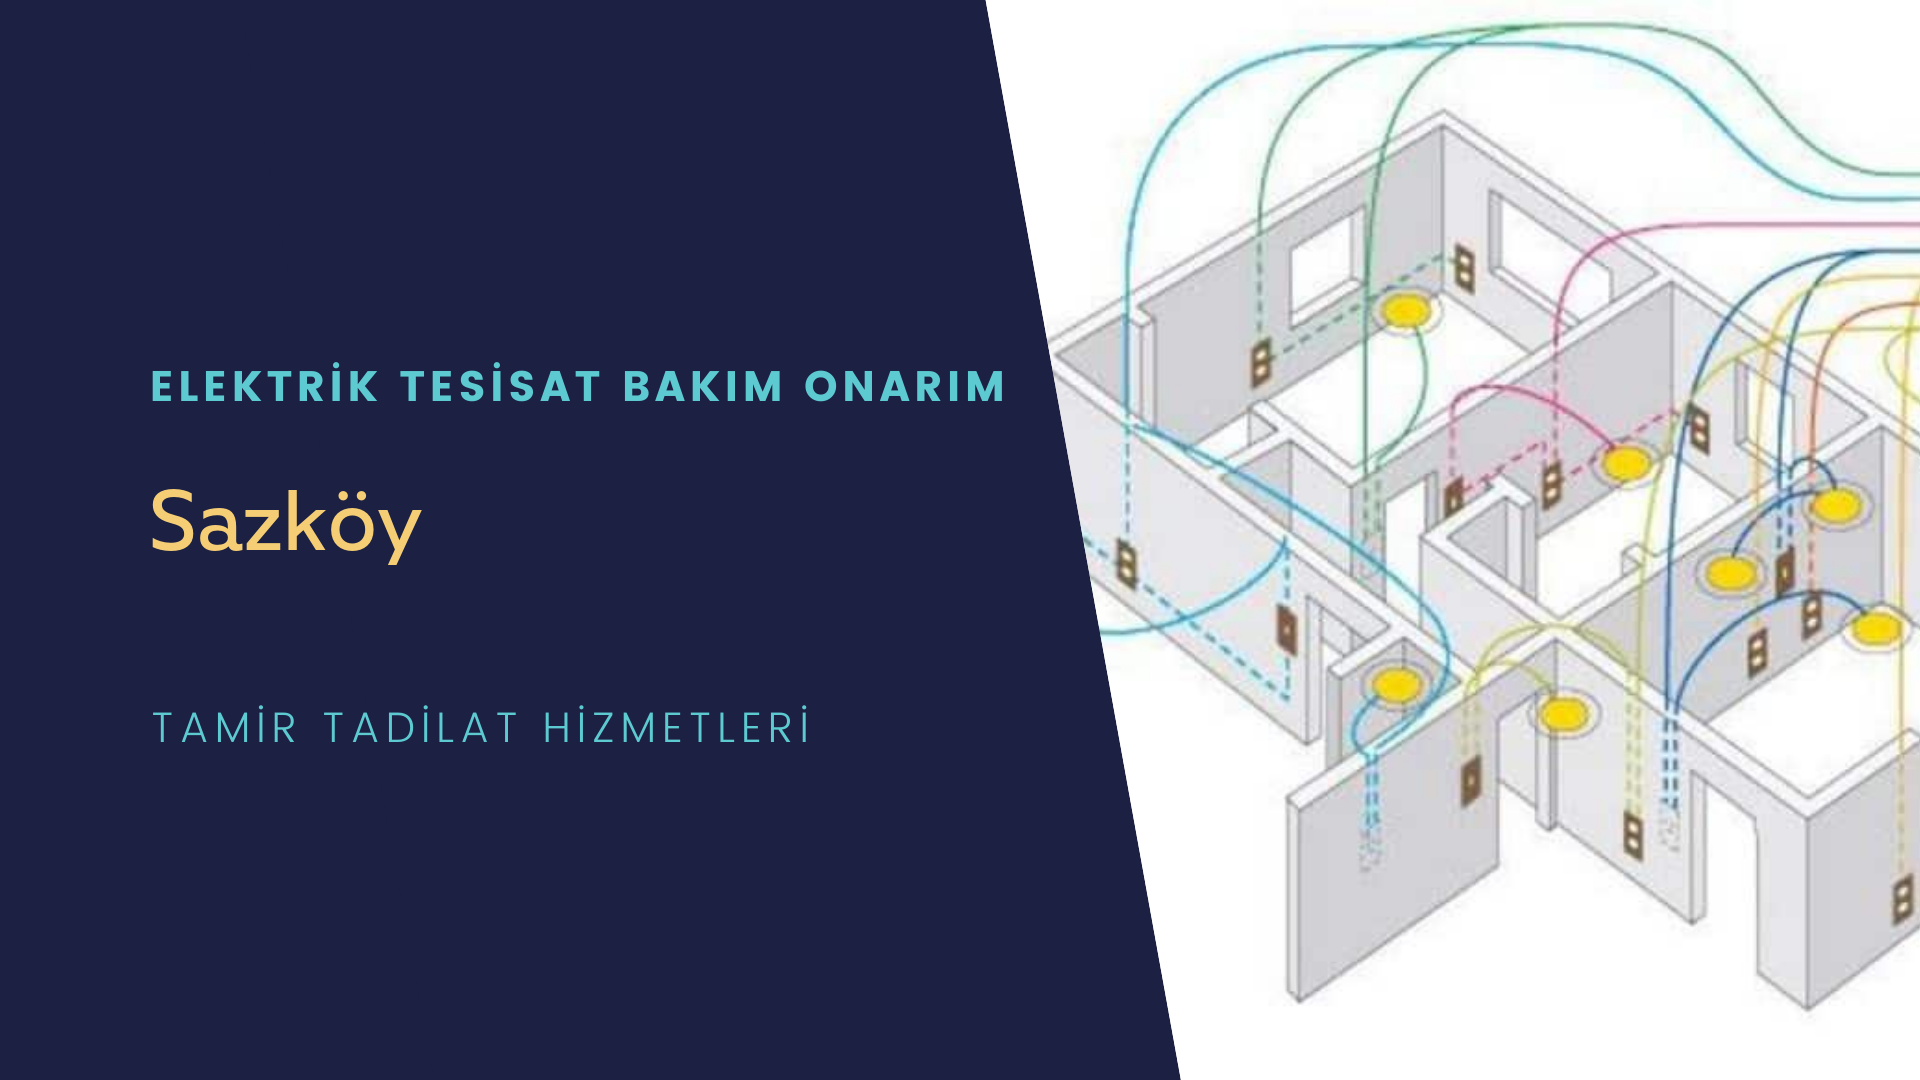 Sazköy'de elektrik tesisatı ustalarımı arıyorsunuz doğru adrestenizi Sazköy elektrik tesisatı ustalarımız 7/24 sizlere hizmet vermekten mutluluk duyar.